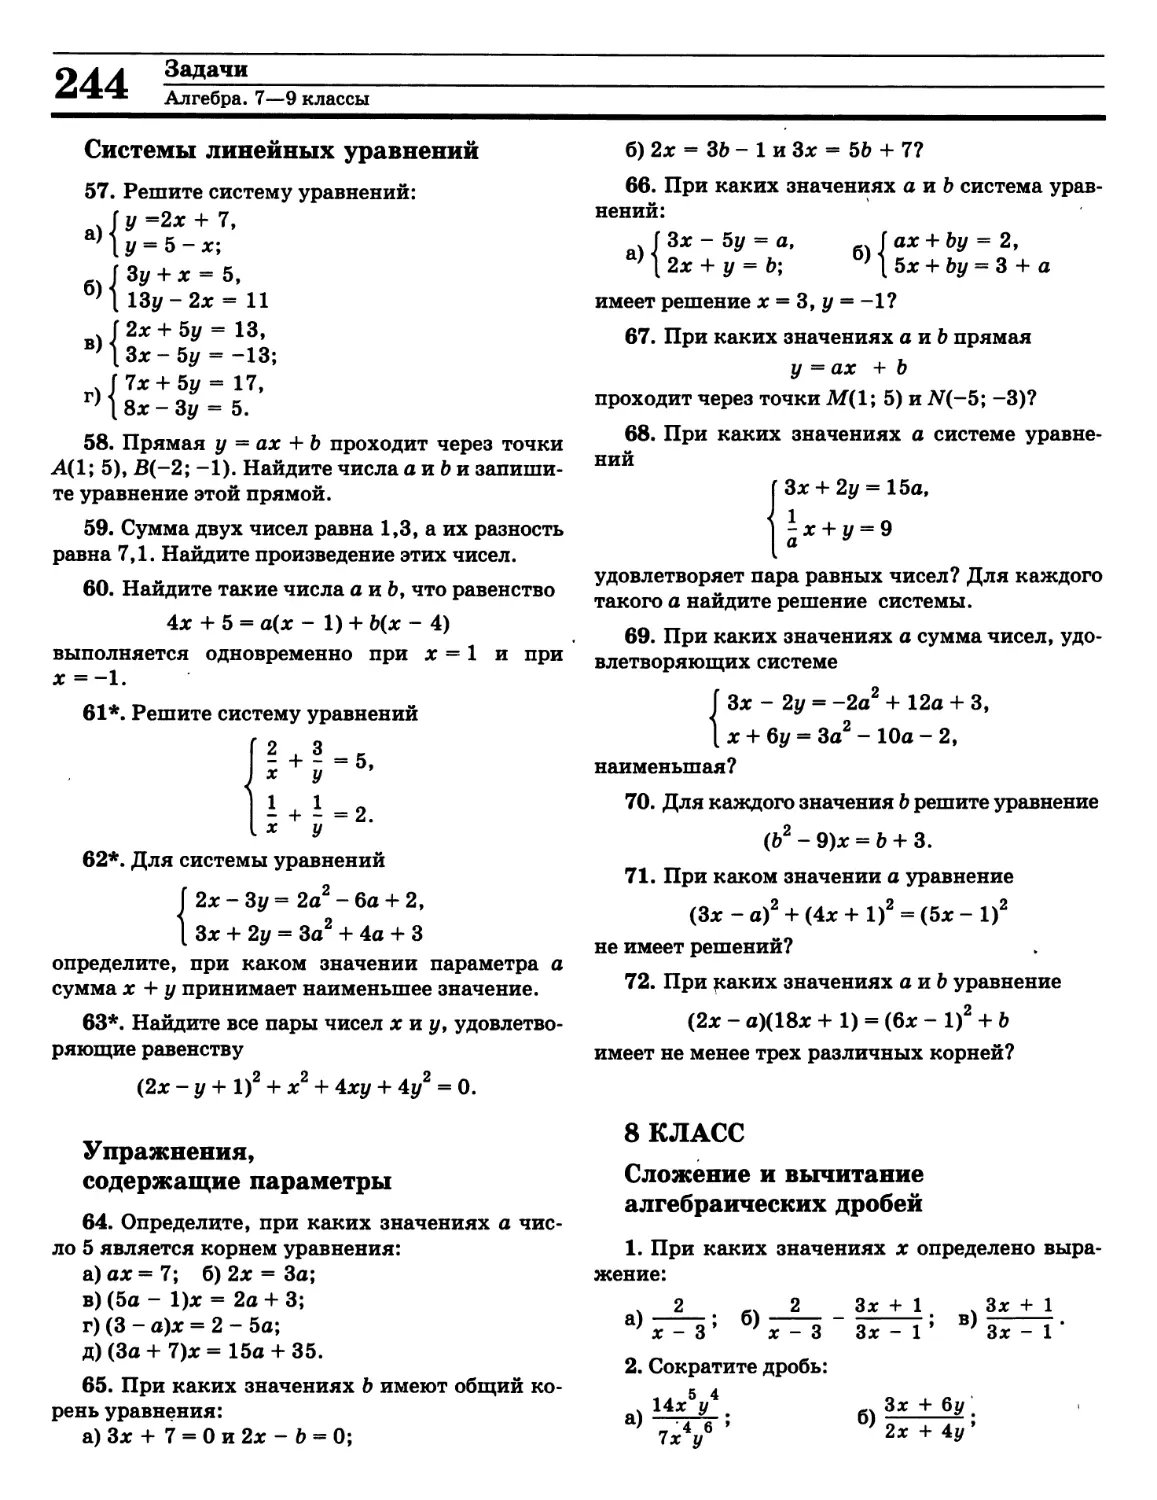 Вычитание алгебраических дробей
Системы уравнений
Сложение алгебраических дробей
Упражнения, содержащие параметры